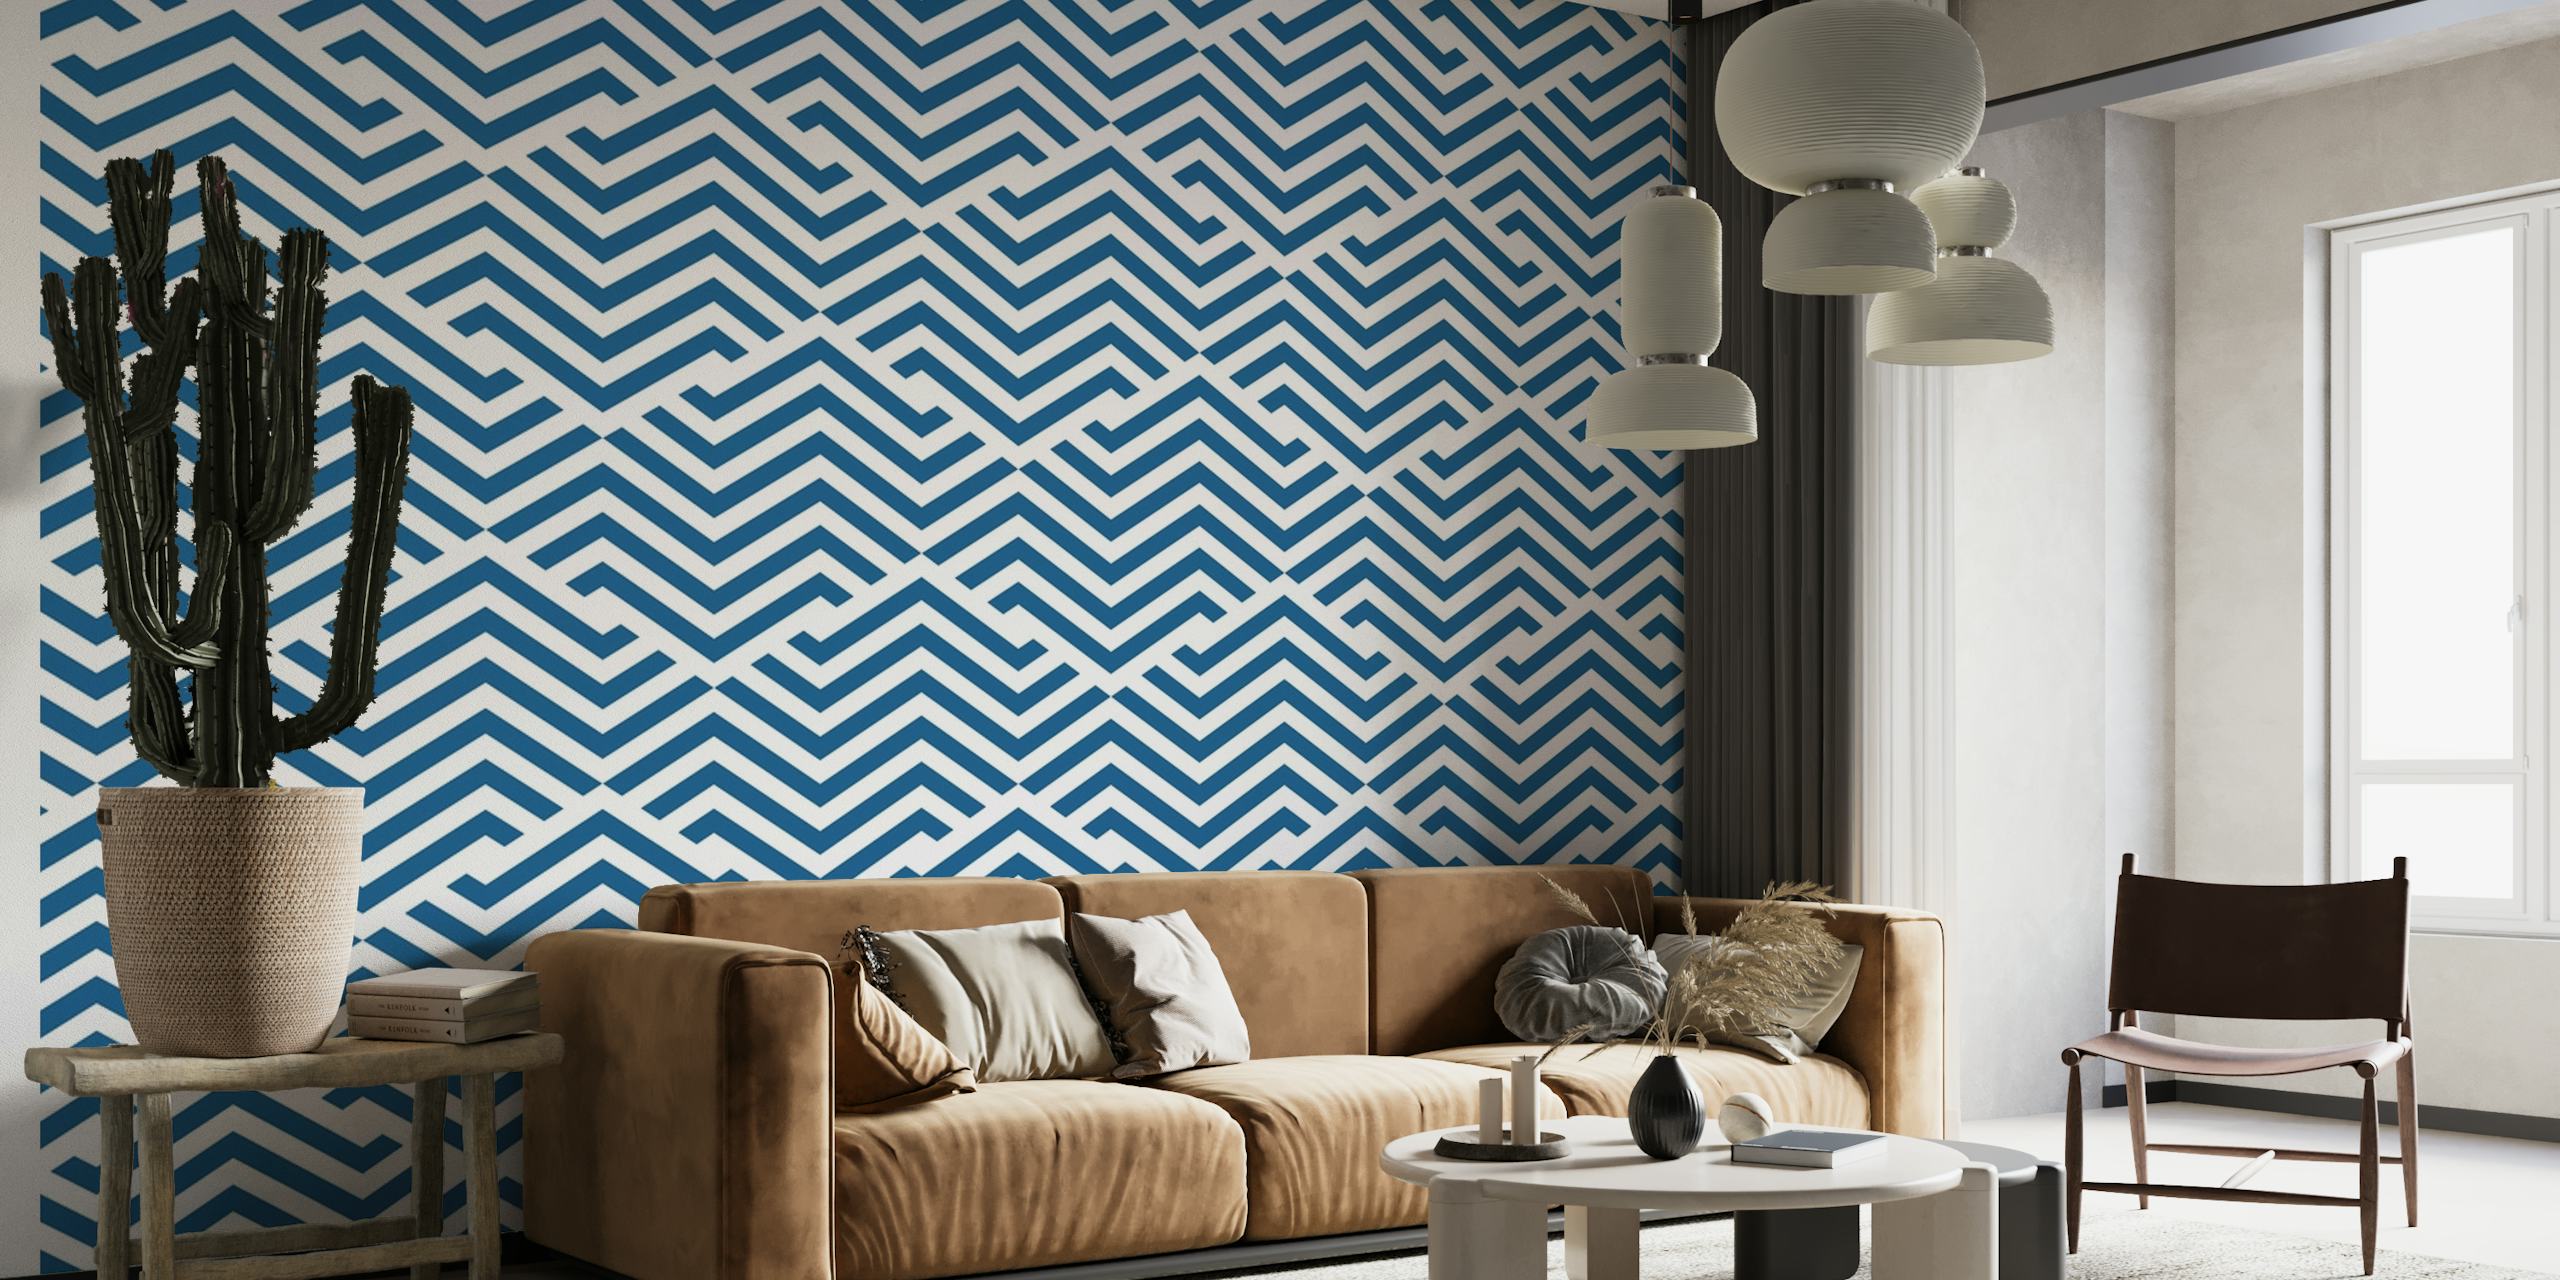 Marineblauwe en witte muurschildering met zigzagpatroon genaamd Kavala.